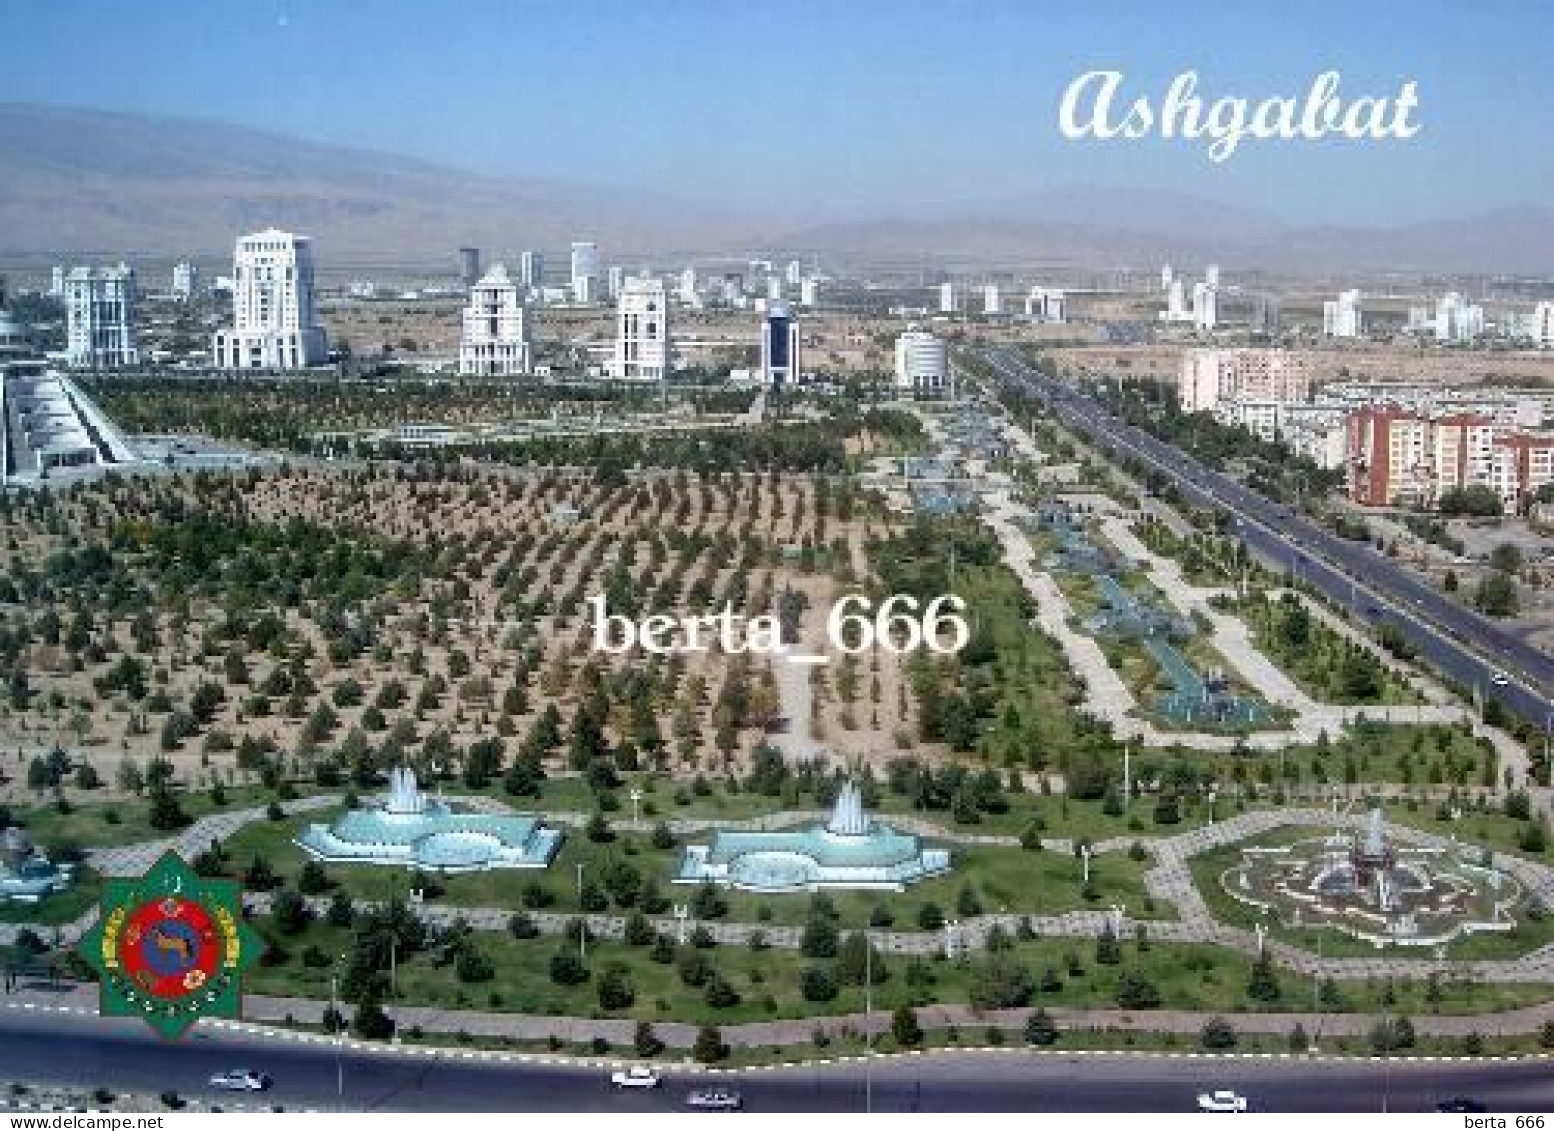 Turkmenistan Ashgabat Overview New Postcard - Turkmenistan